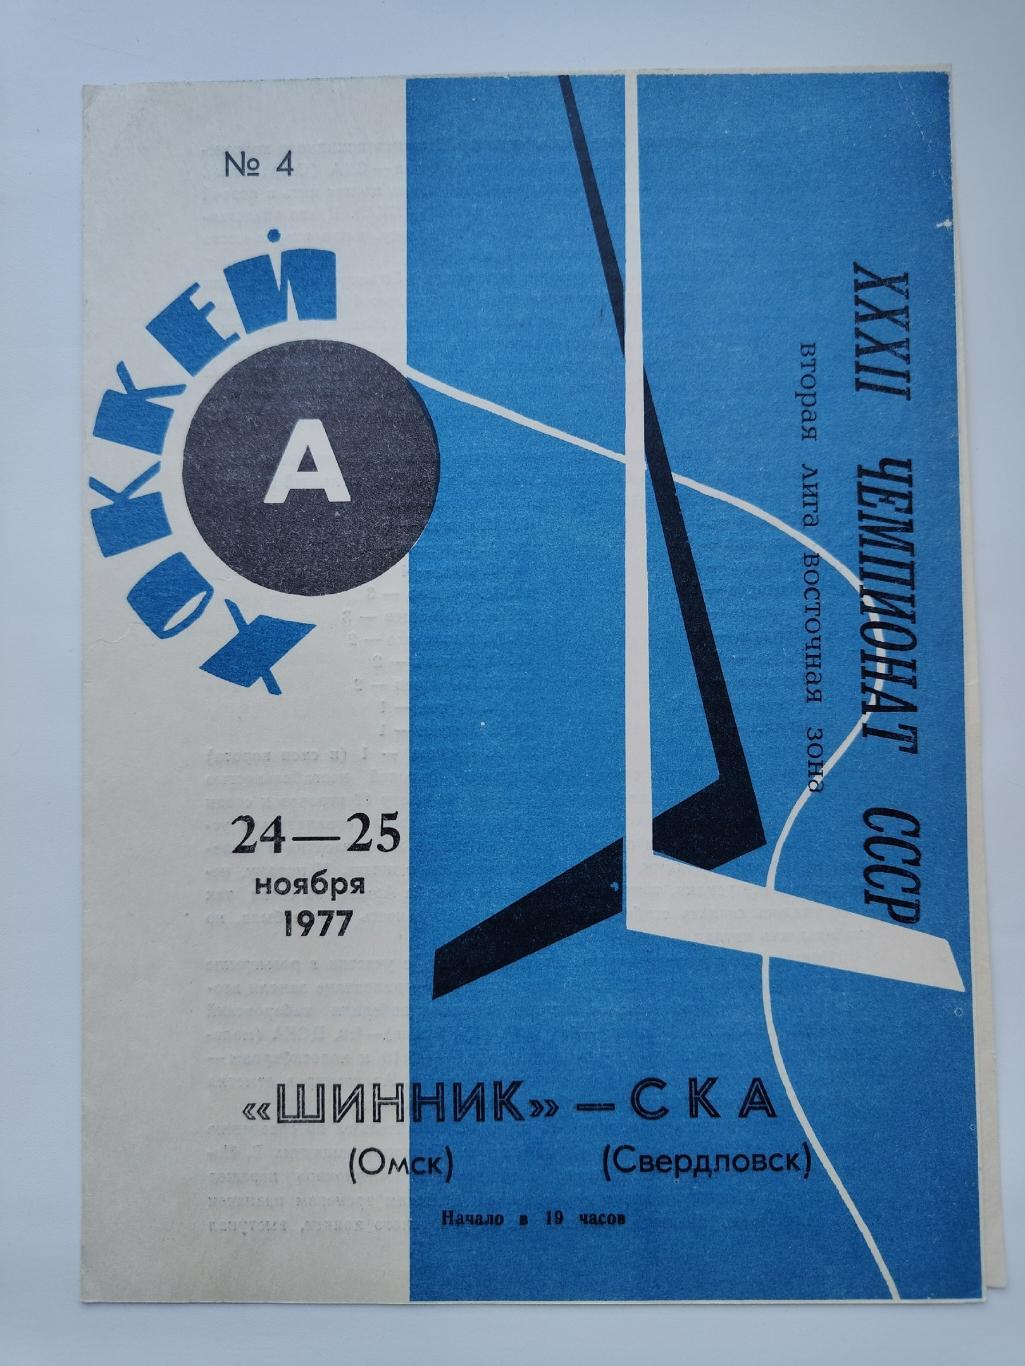 Шинник Омск - СКА Свердловск 24/25 ноября 1977